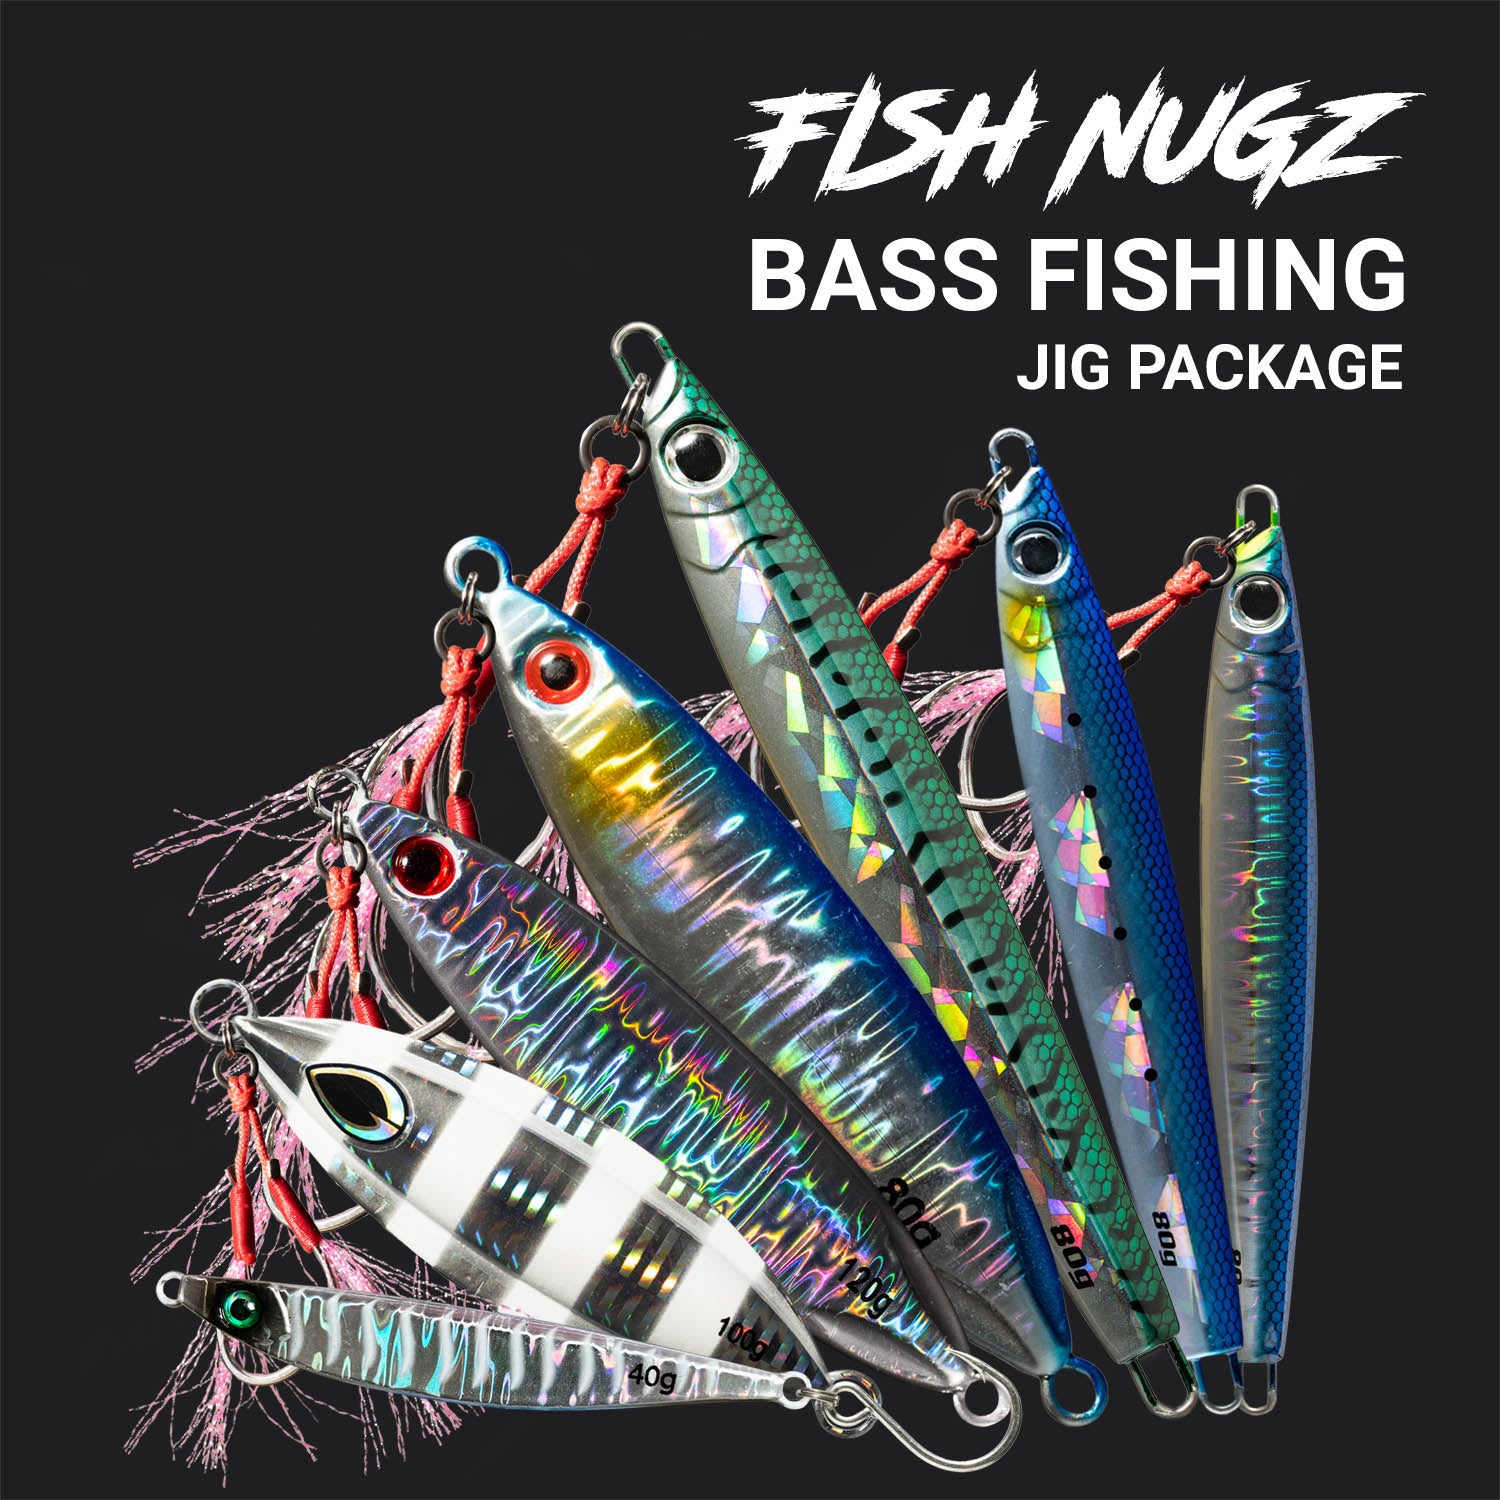 Fish Nugz Bass Fishing Jig Package